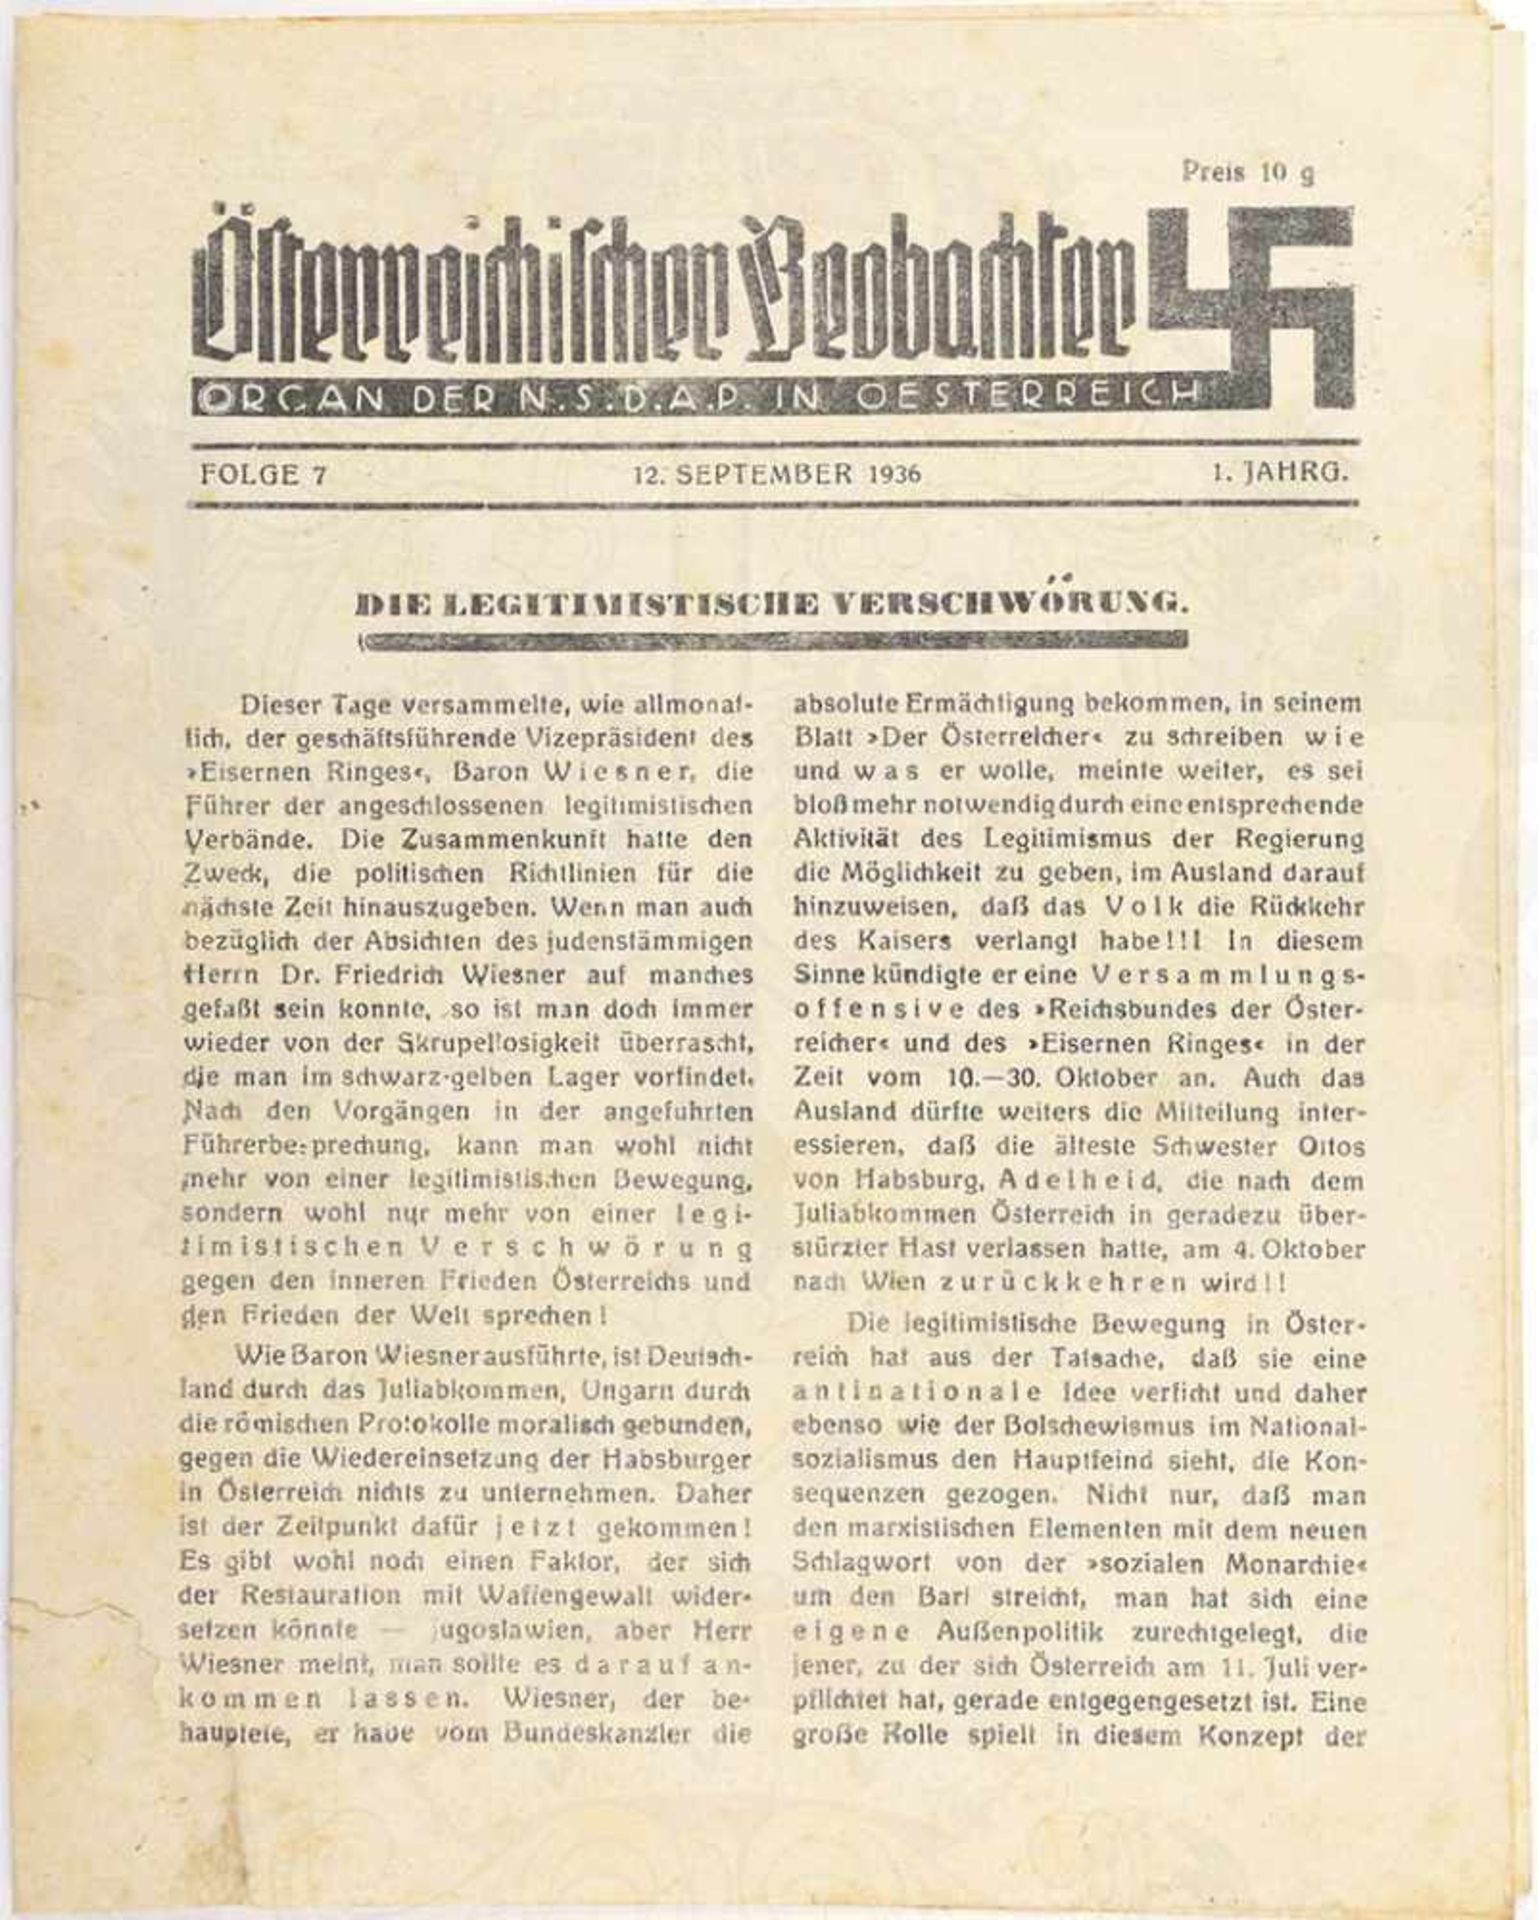 ÖSTERREICHISCHER BEOBACHTER, „Organ der NSDAP in Österreich“, 1. Jg., Folge 7, 12.9.1936, 8 S., rep.